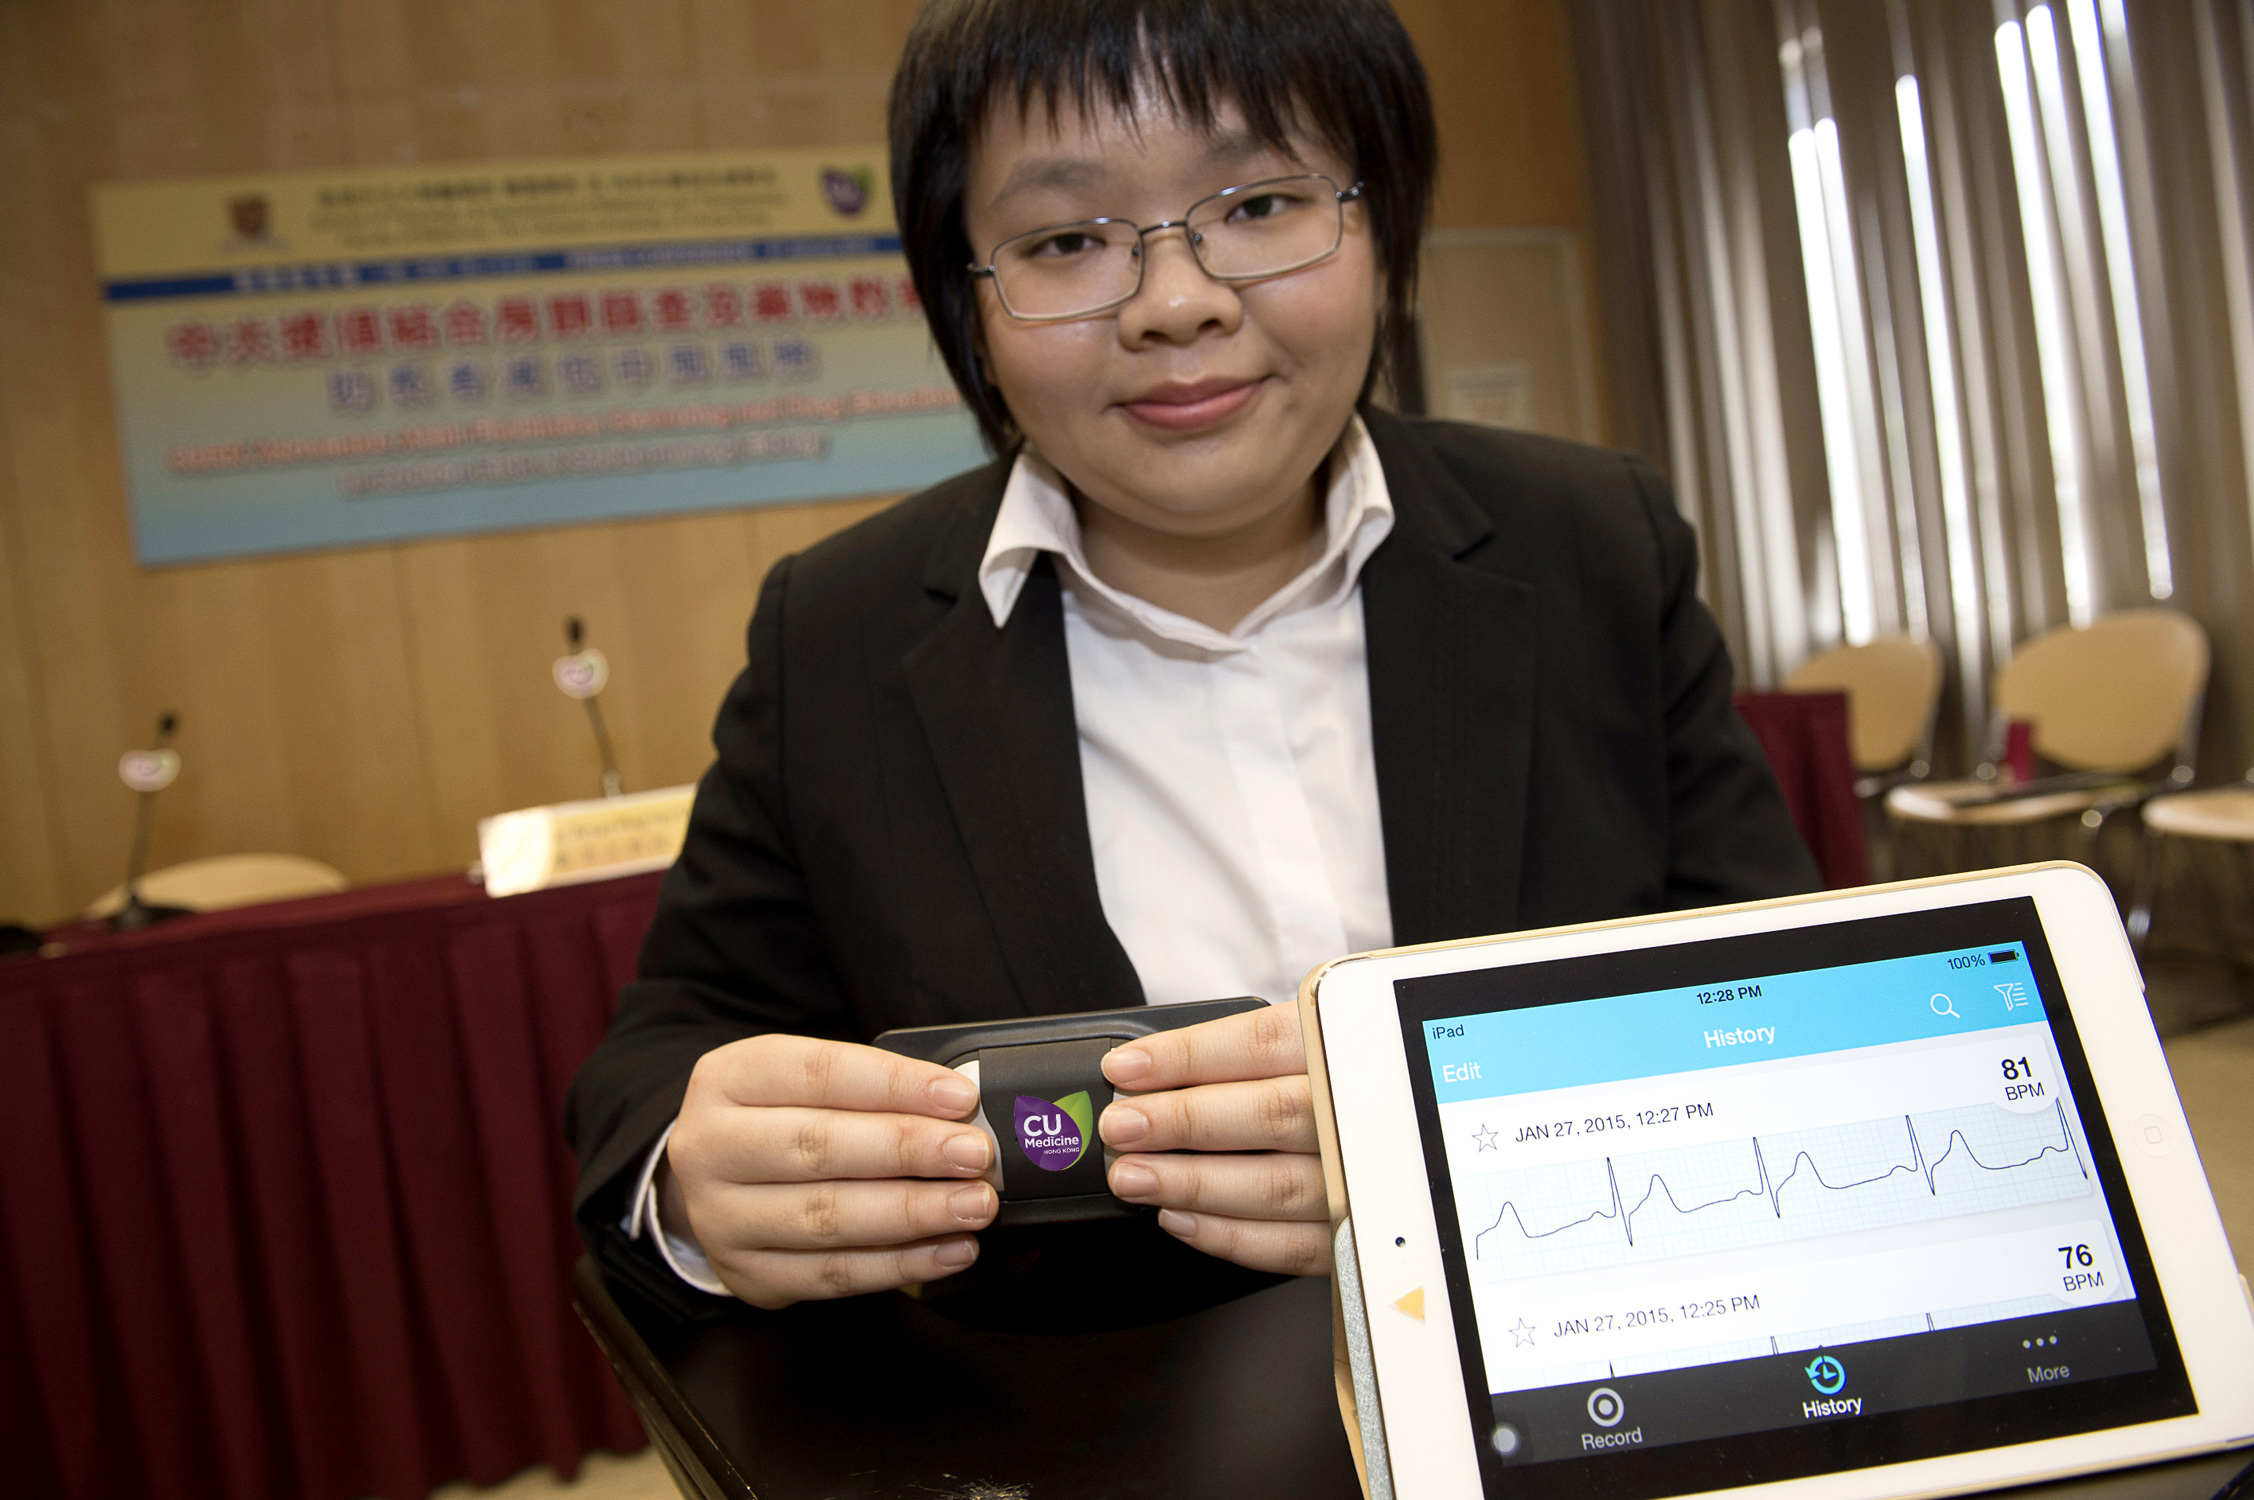 学生义工示范使用手提心电图检测器进行房颤检查。